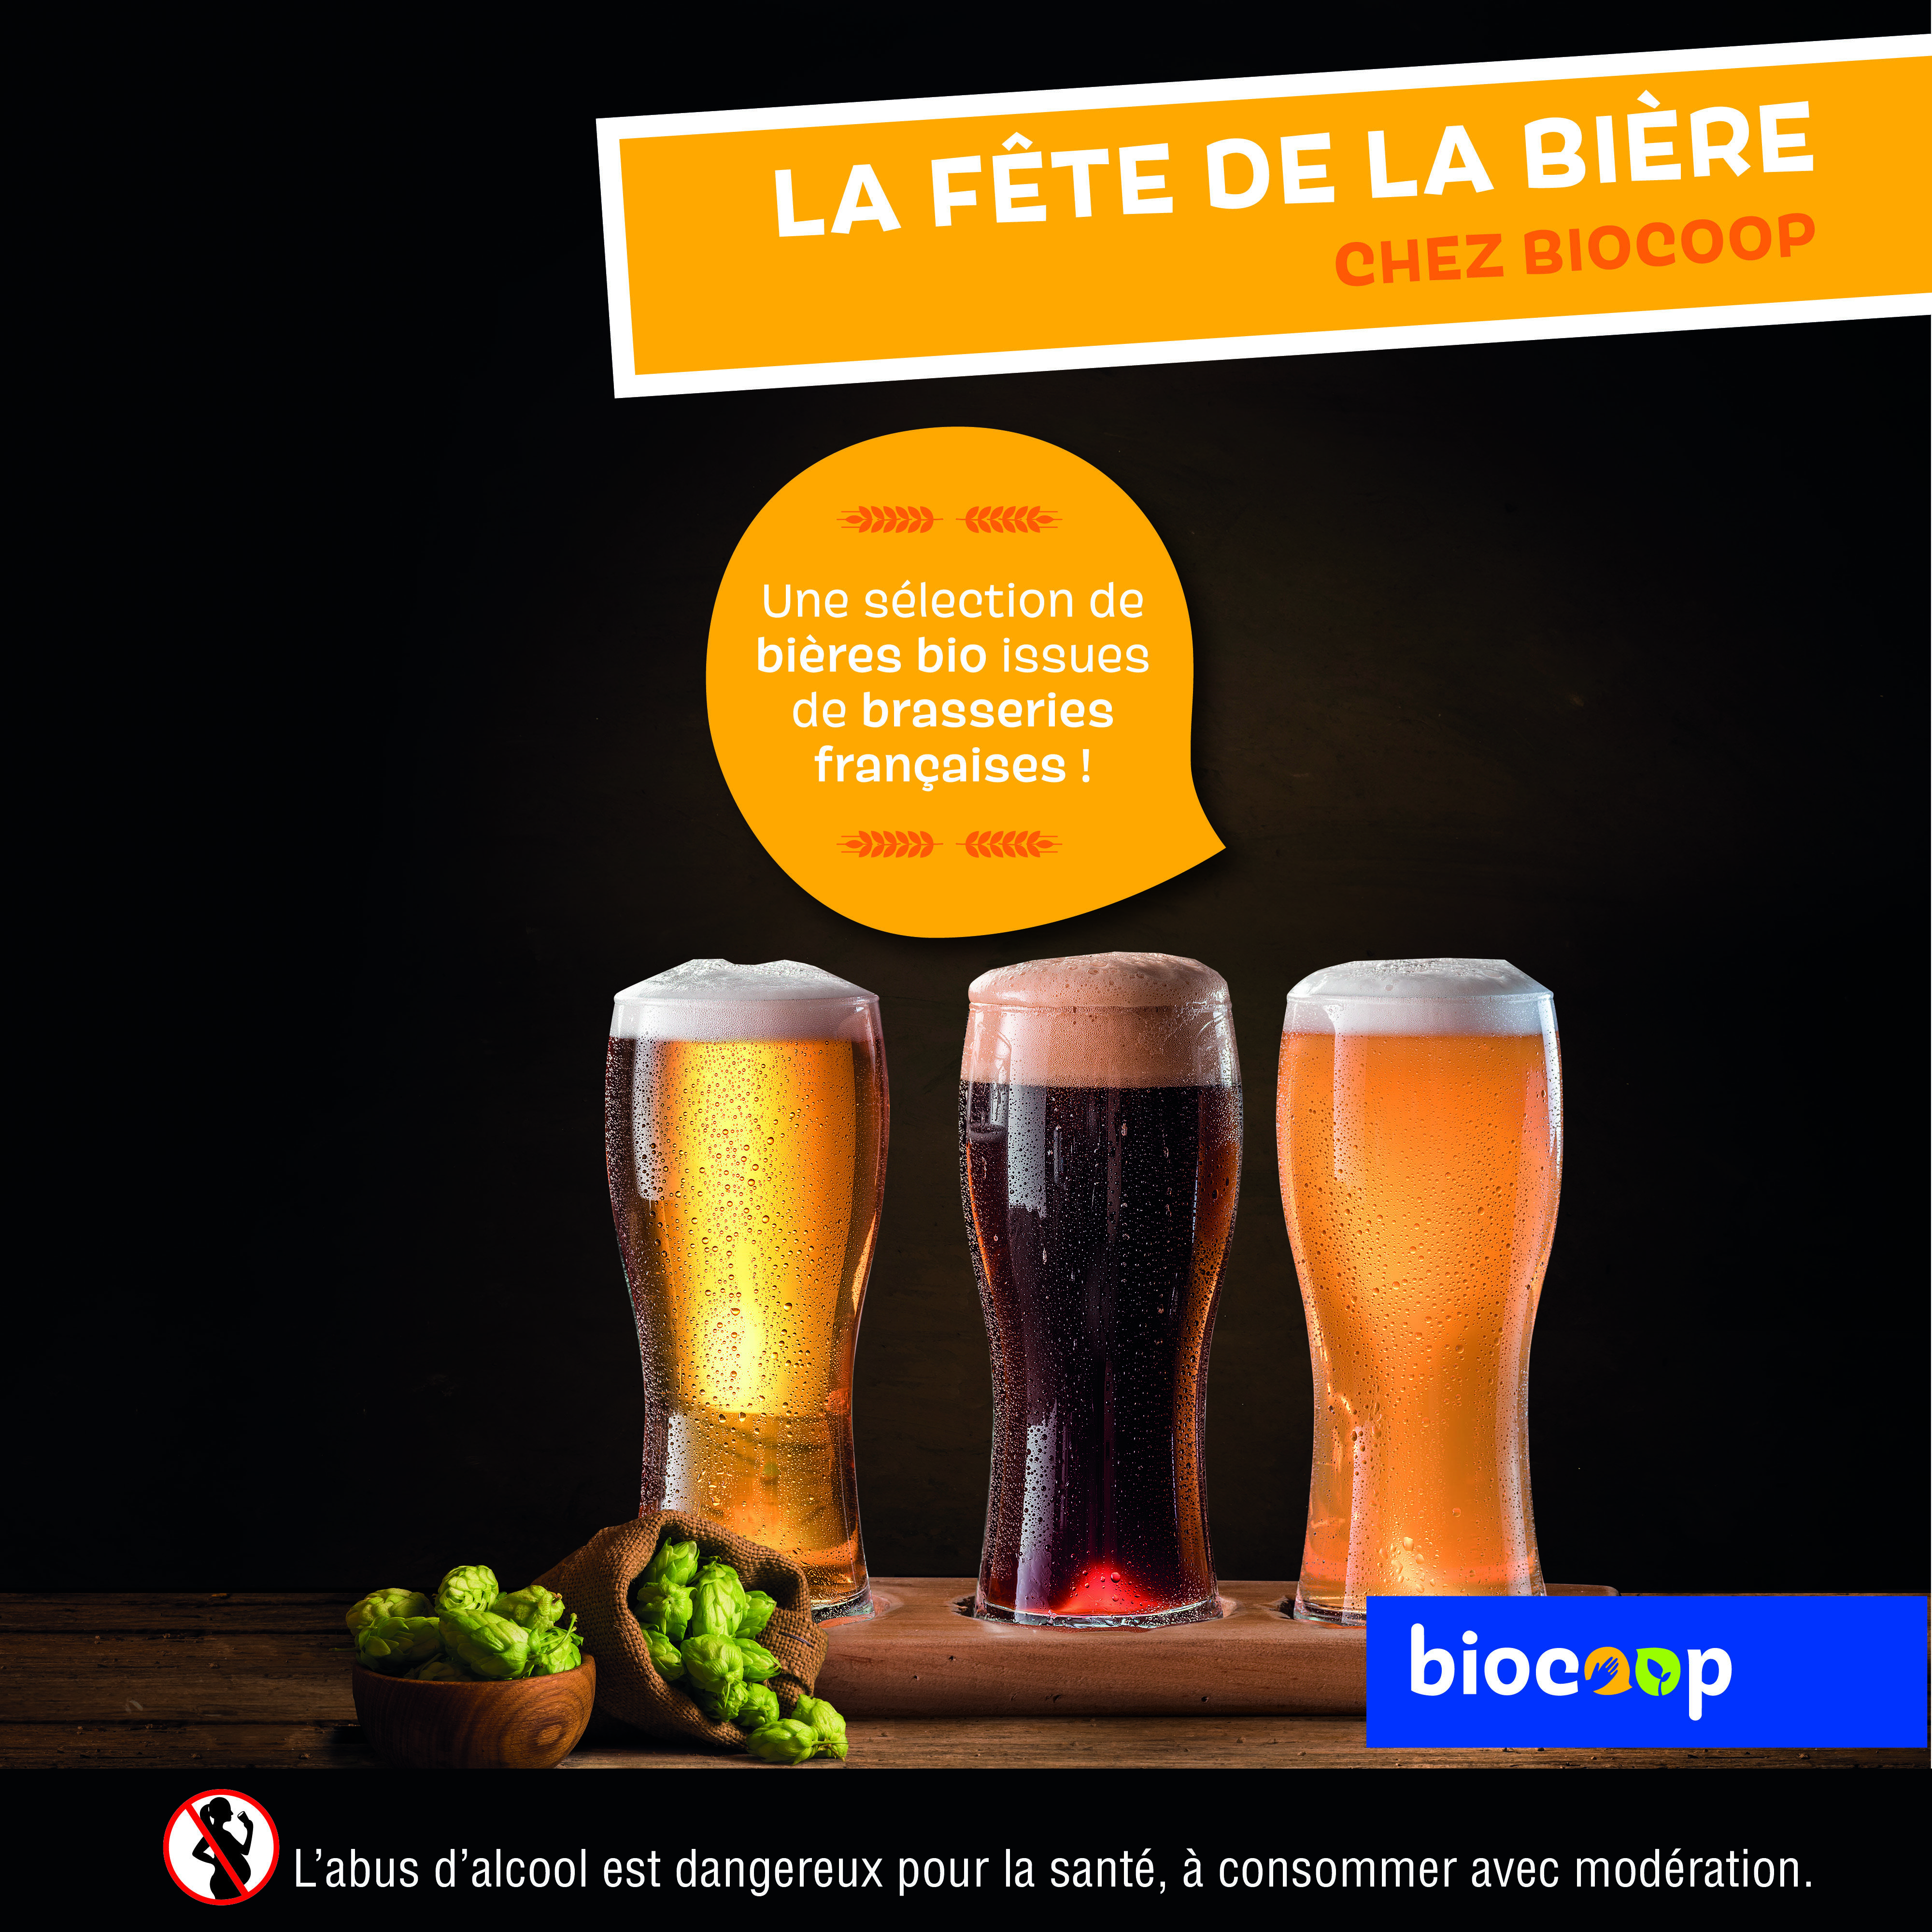 Les bières bio à l’honneur chez Biocoop